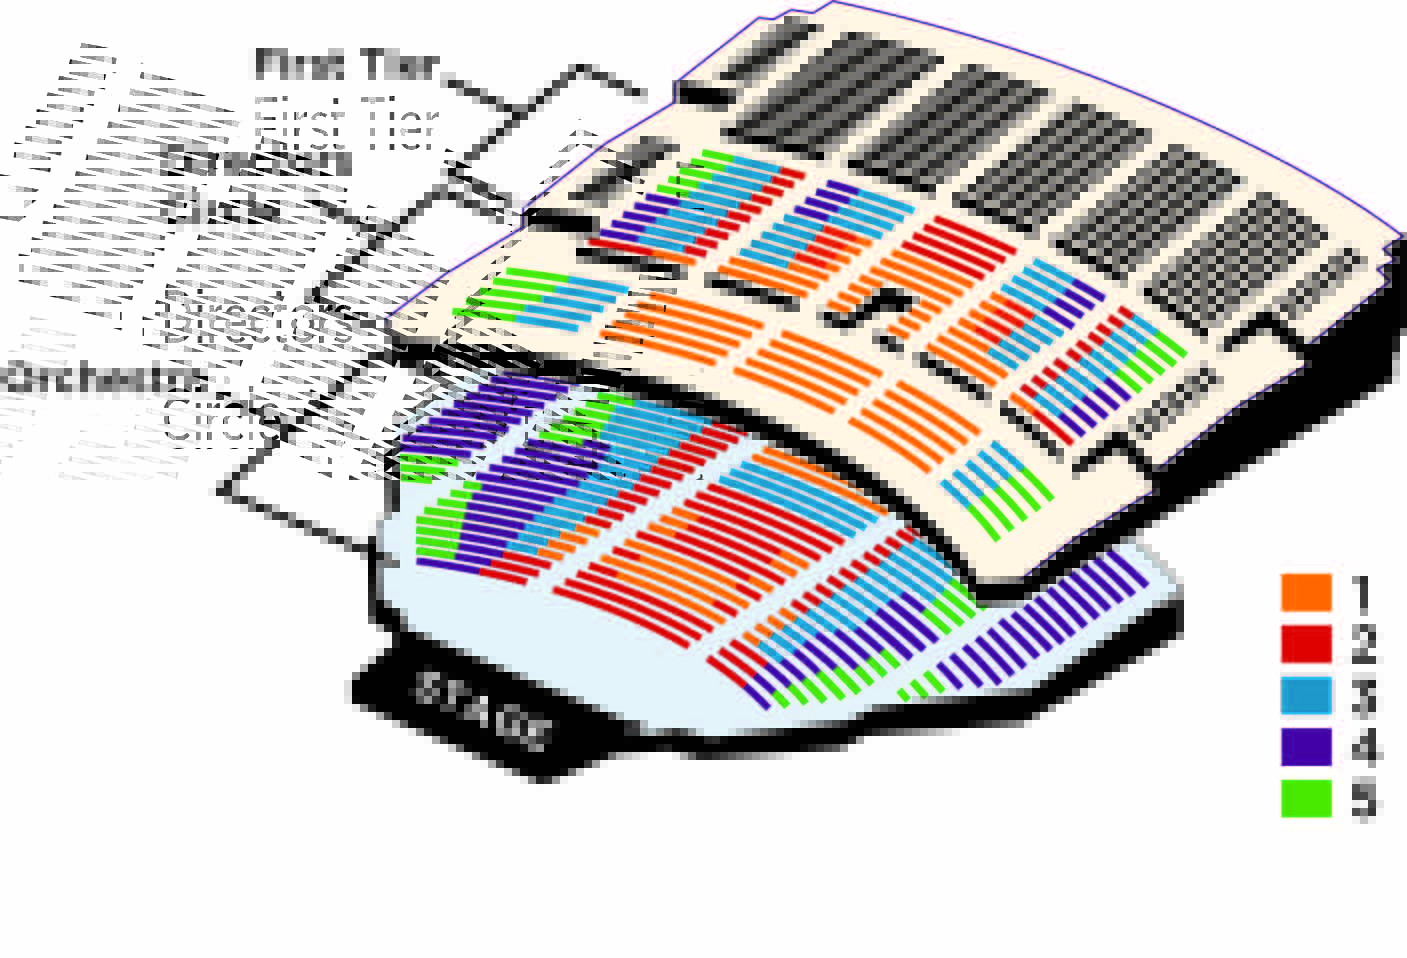 Benedum Theater Seating Chart